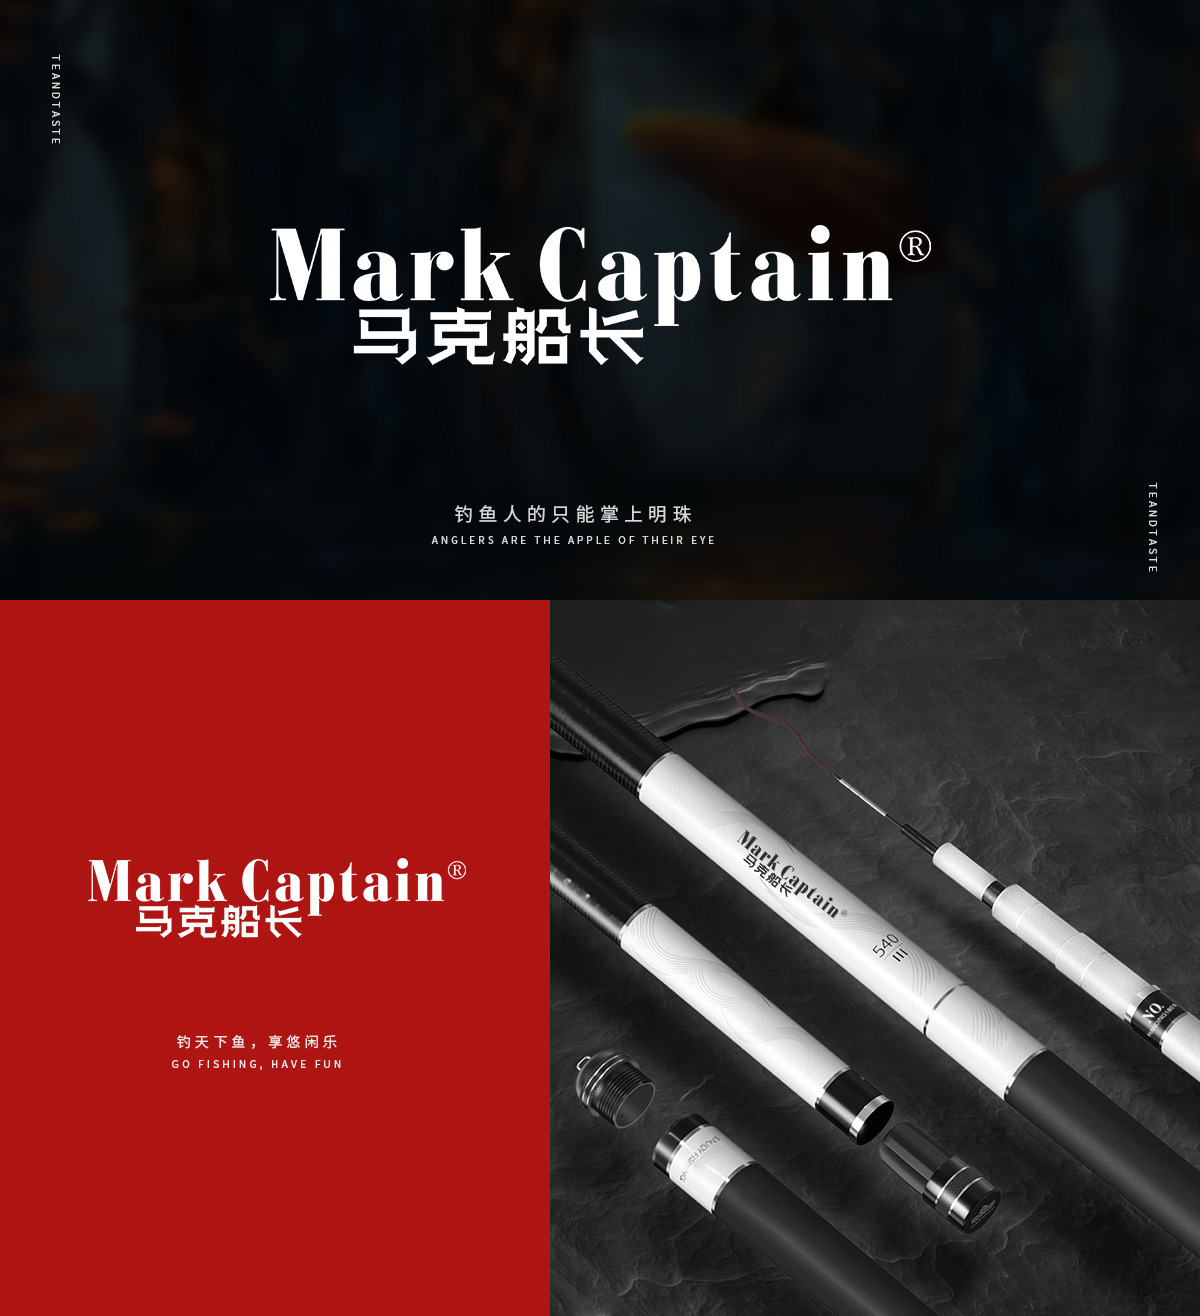 马克船长 MARK CAPTAIN